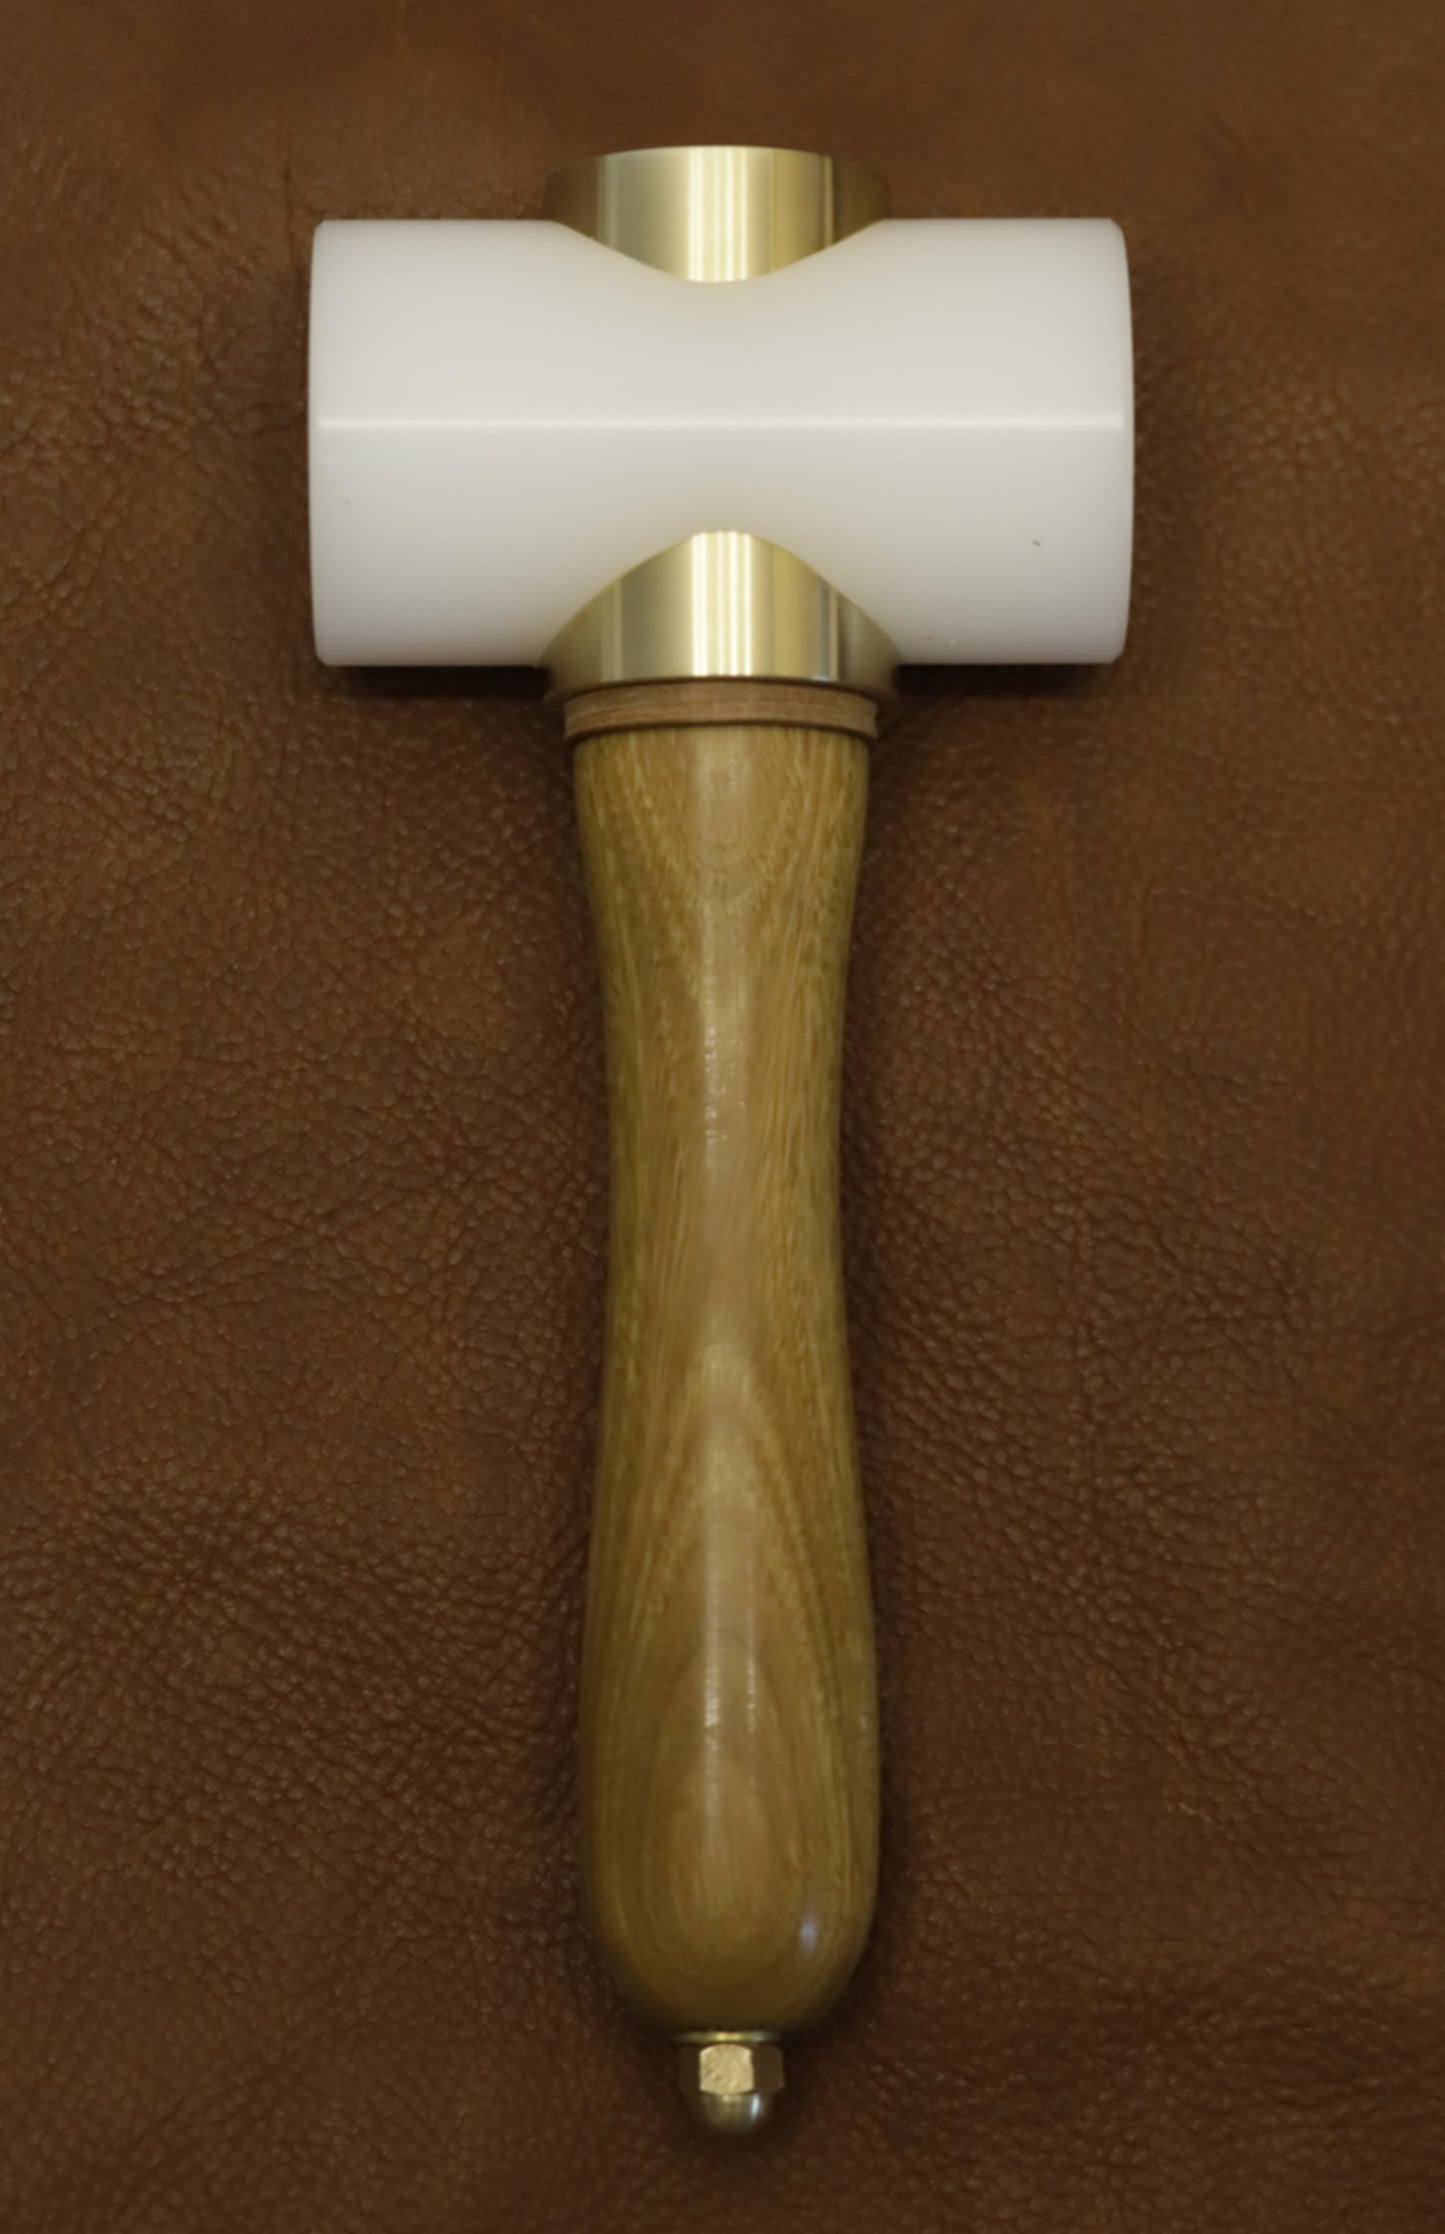 Hammer - Lignum vitae handle